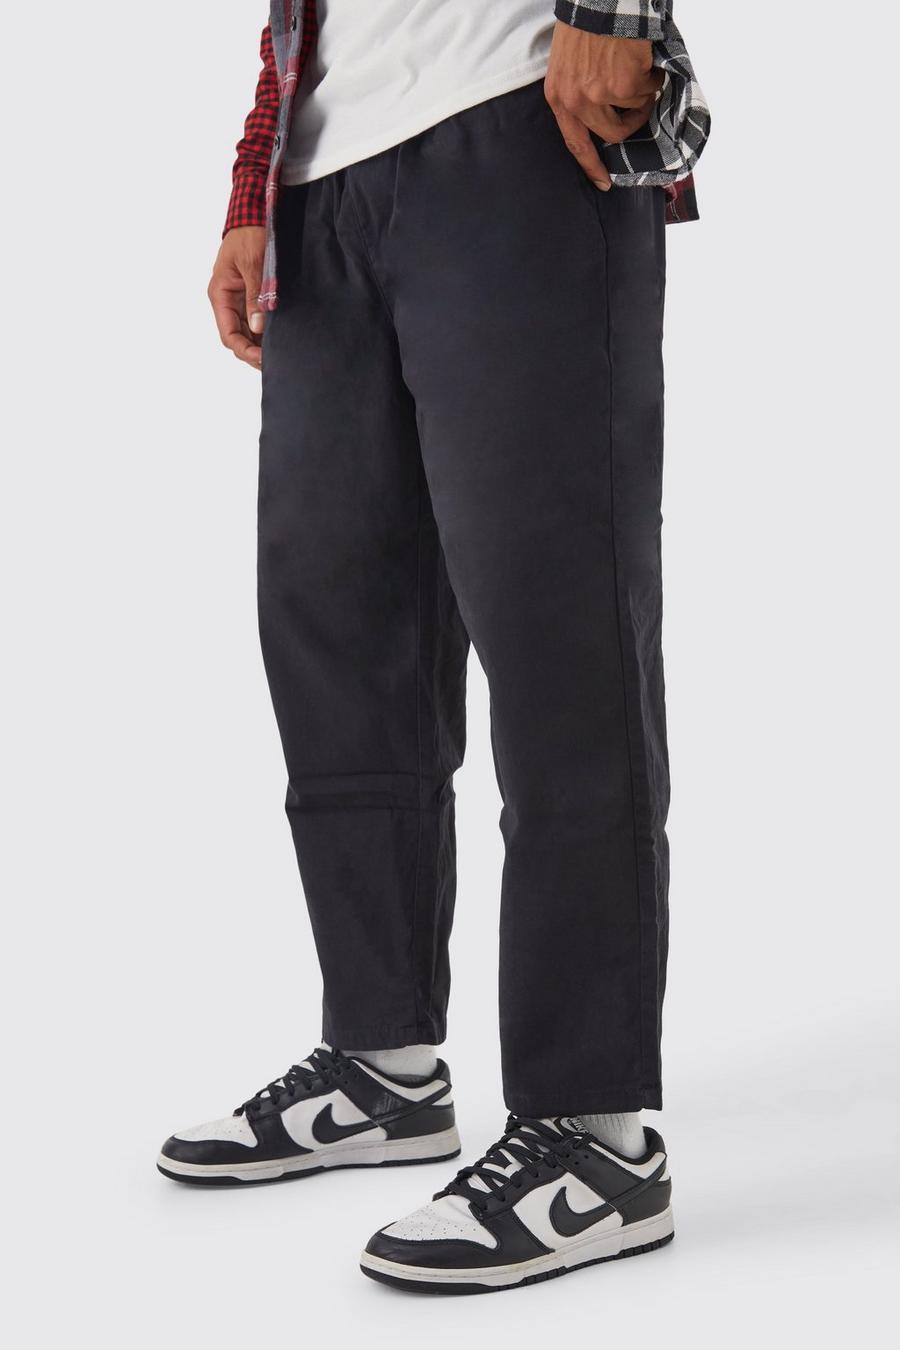 Skater Chino-Hose mit elastischem Bund, Black